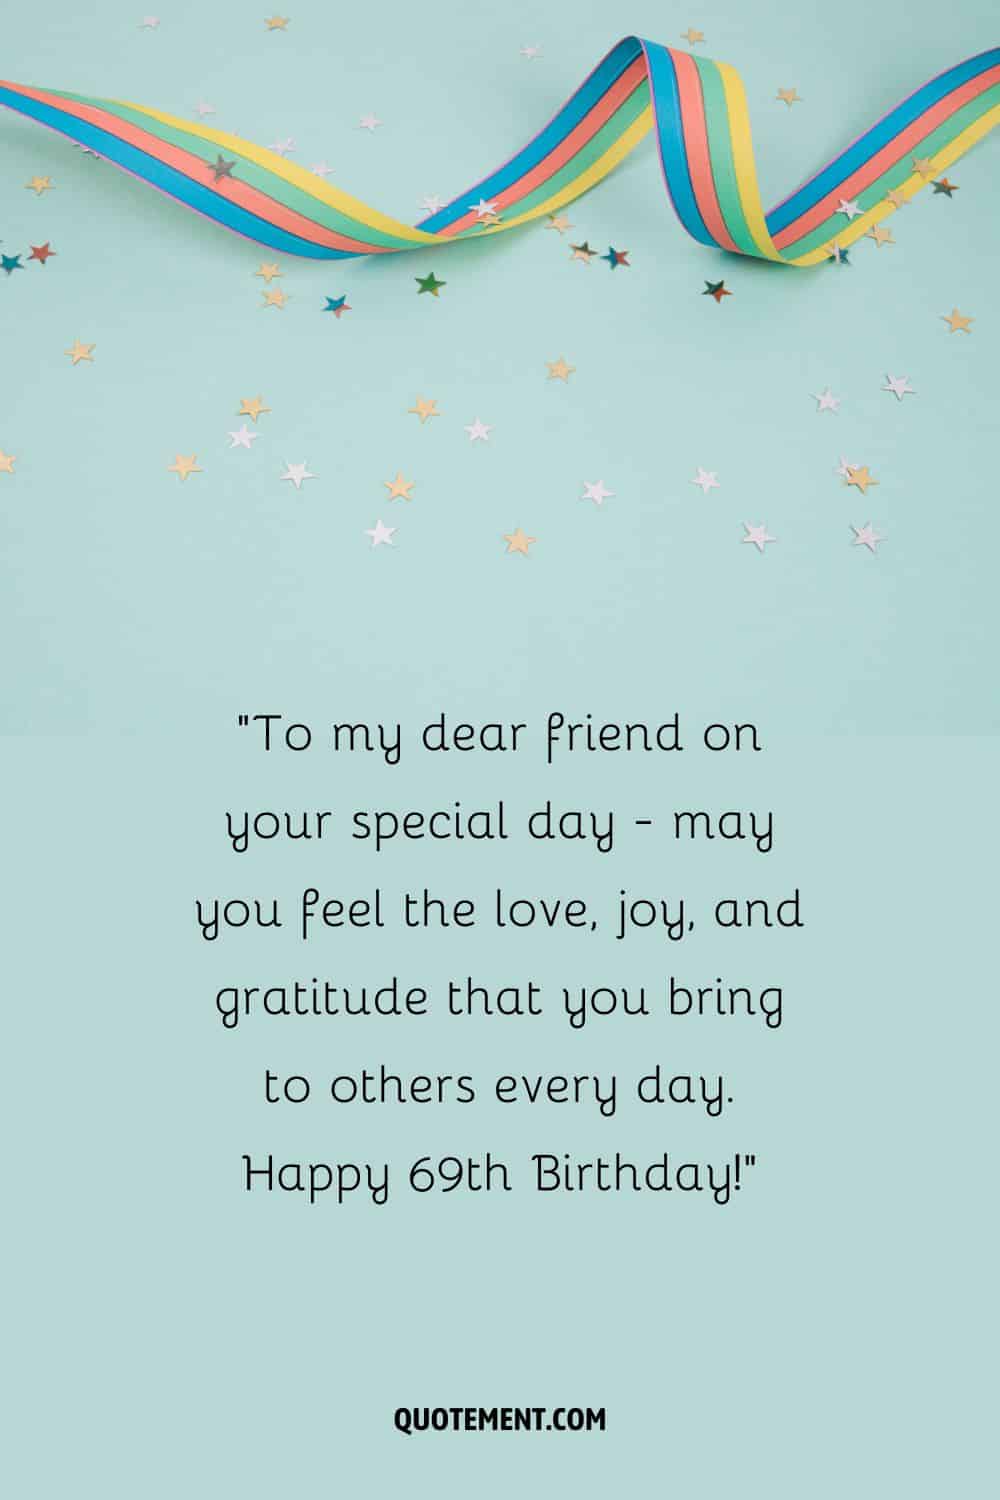 A mi querido amigo en tu día especial - que sientas el amor, la alegría y la gratitud que aportas a los demás cada día. ¡Feliz 69 cumpleaños!